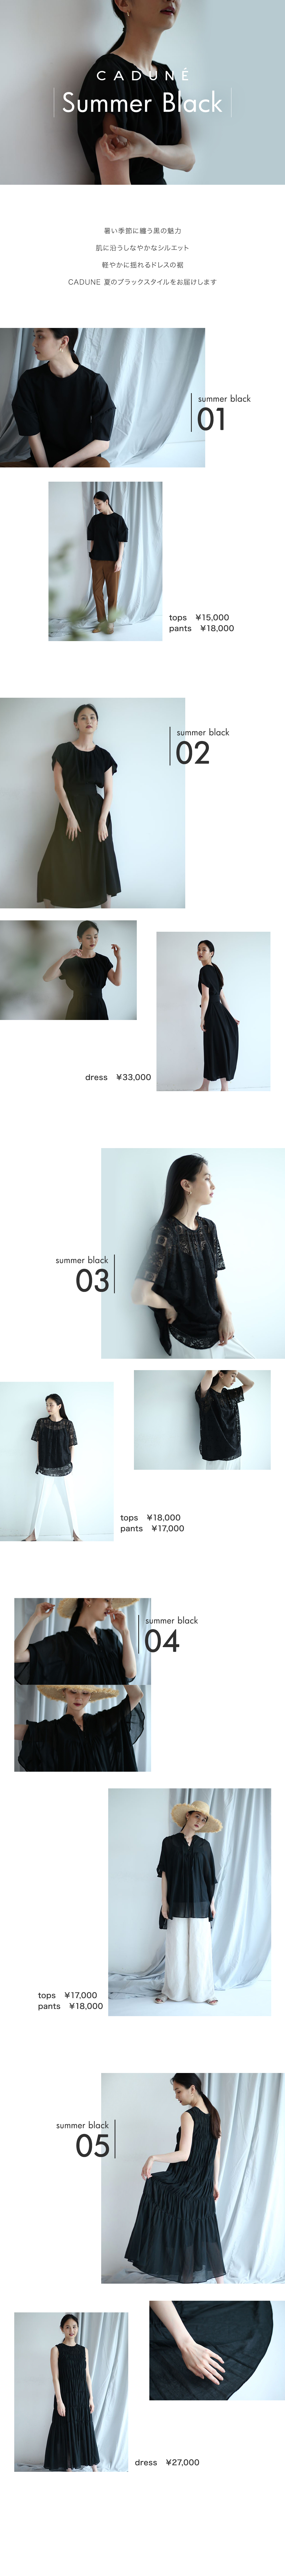 Summer Black